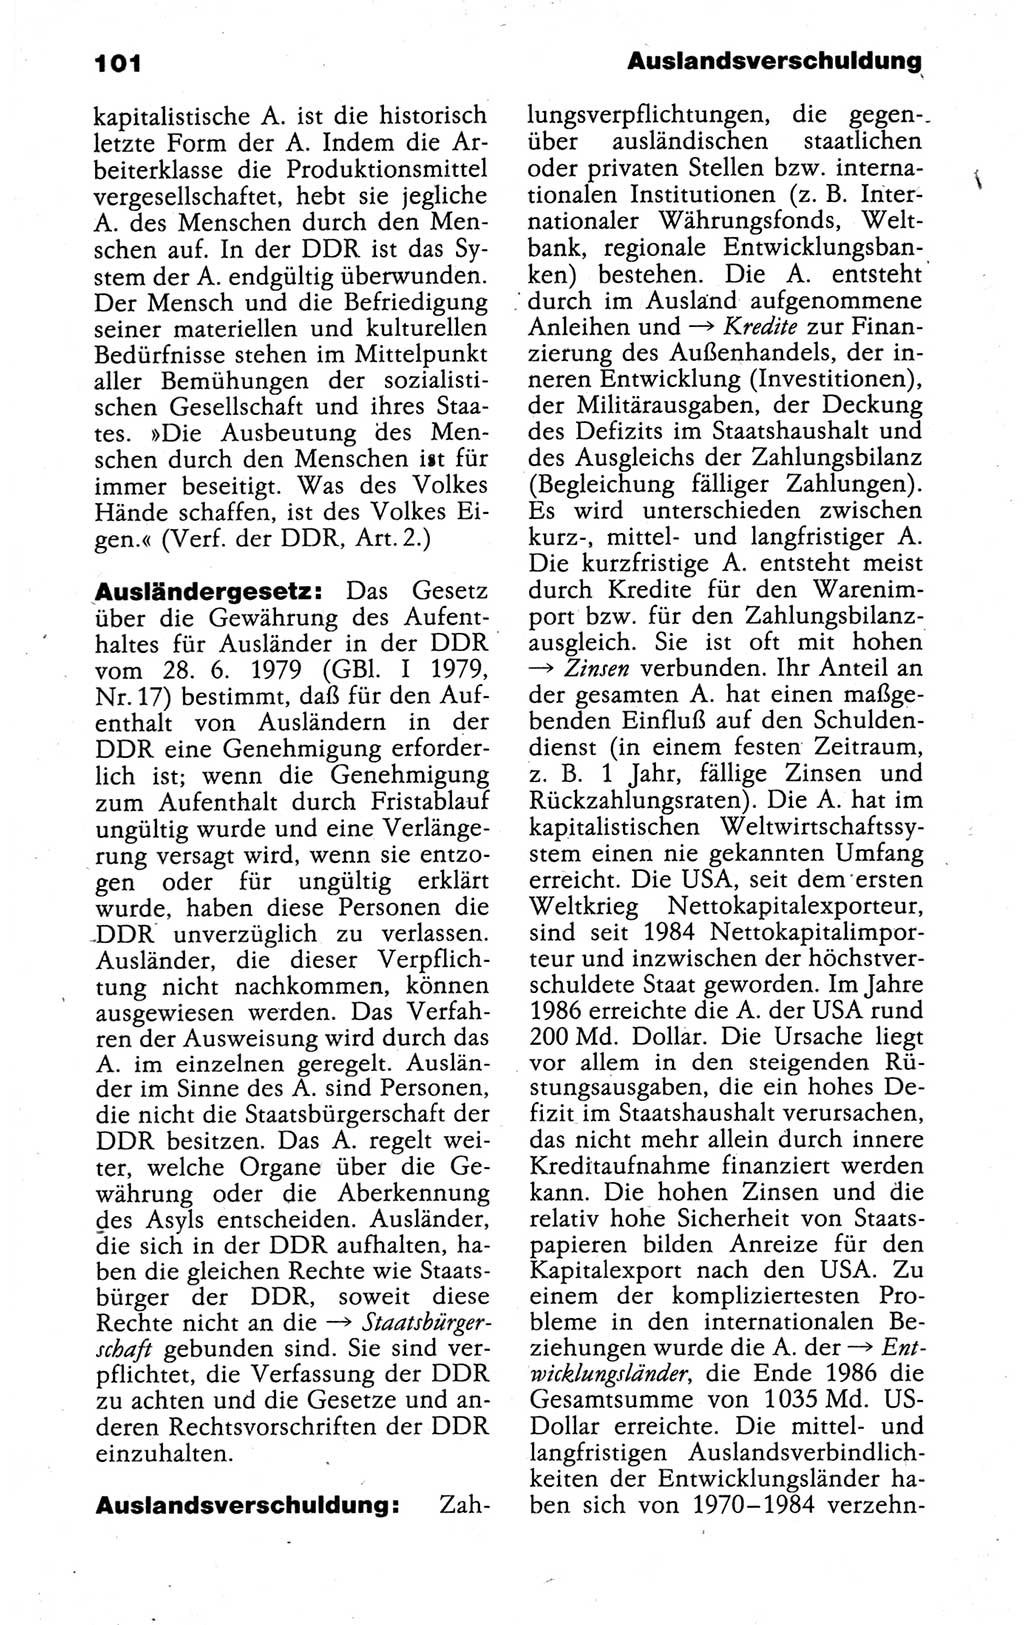 Kleines politisches Wörterbuch [Deutsche Demokratische Republik (DDR)] 1988, Seite 101 (Kl. pol. Wb. DDR 1988, S. 101)